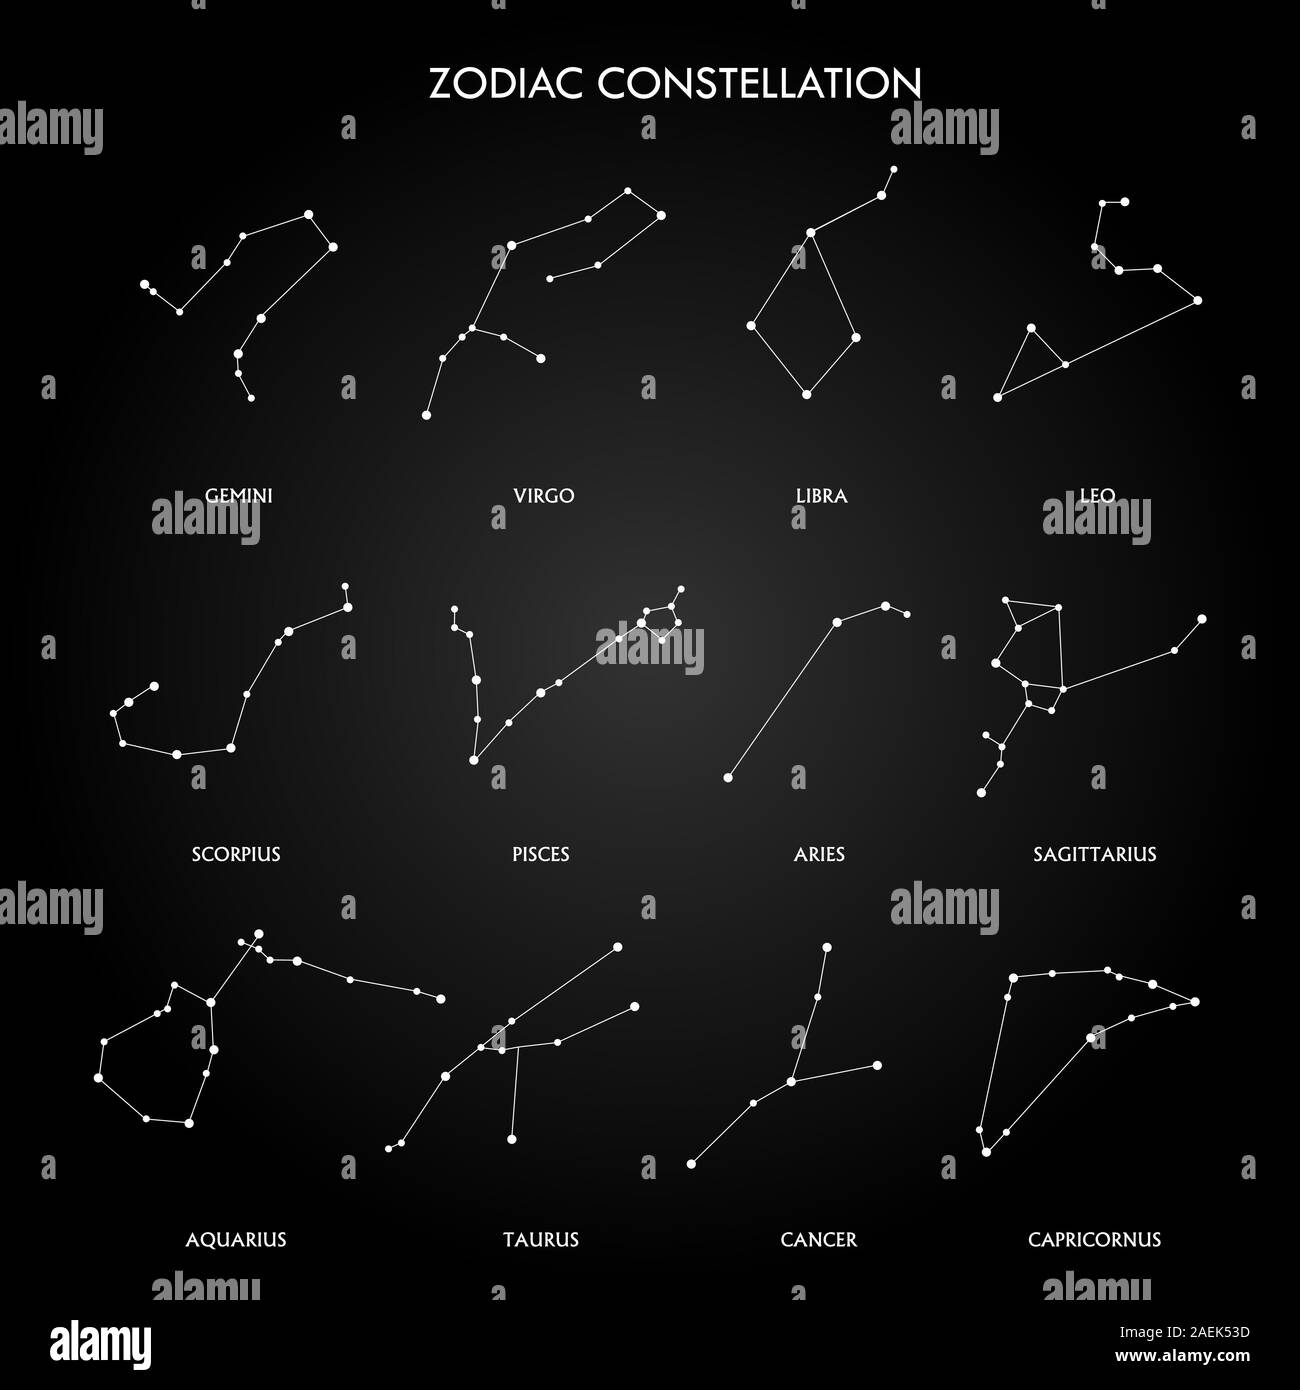 Las Estrellas y las Constelaciones del Zodiaco.